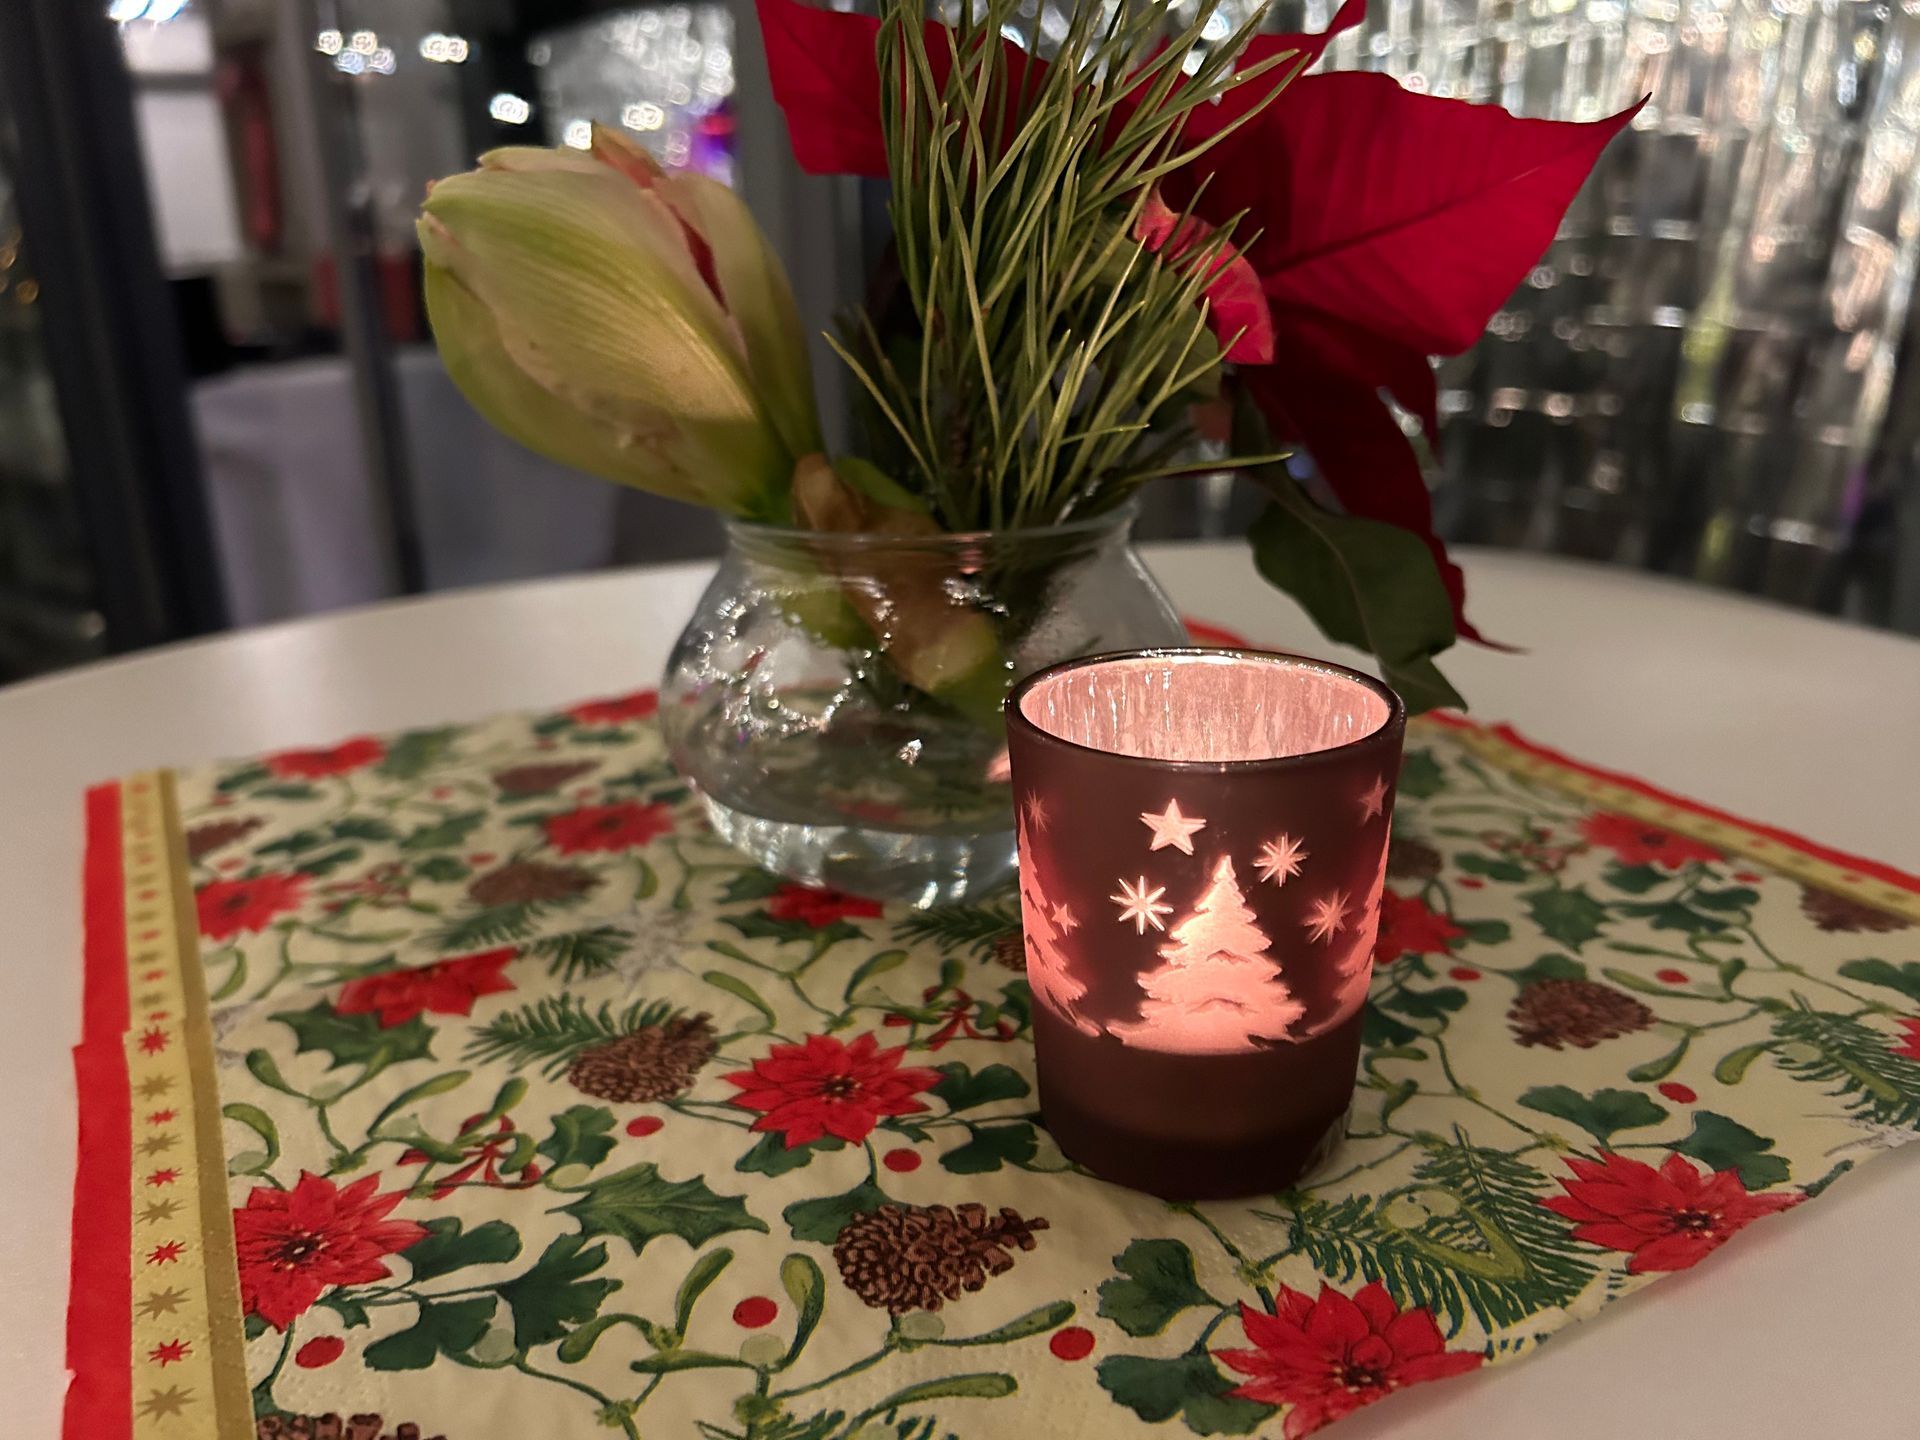 Alle Tische sind weihnachtlich dekoriert. Auf einem Stehtisch liegen Weihnachtsservietten, weihnachtliche Blumen und Teelichter stehen darauf. 